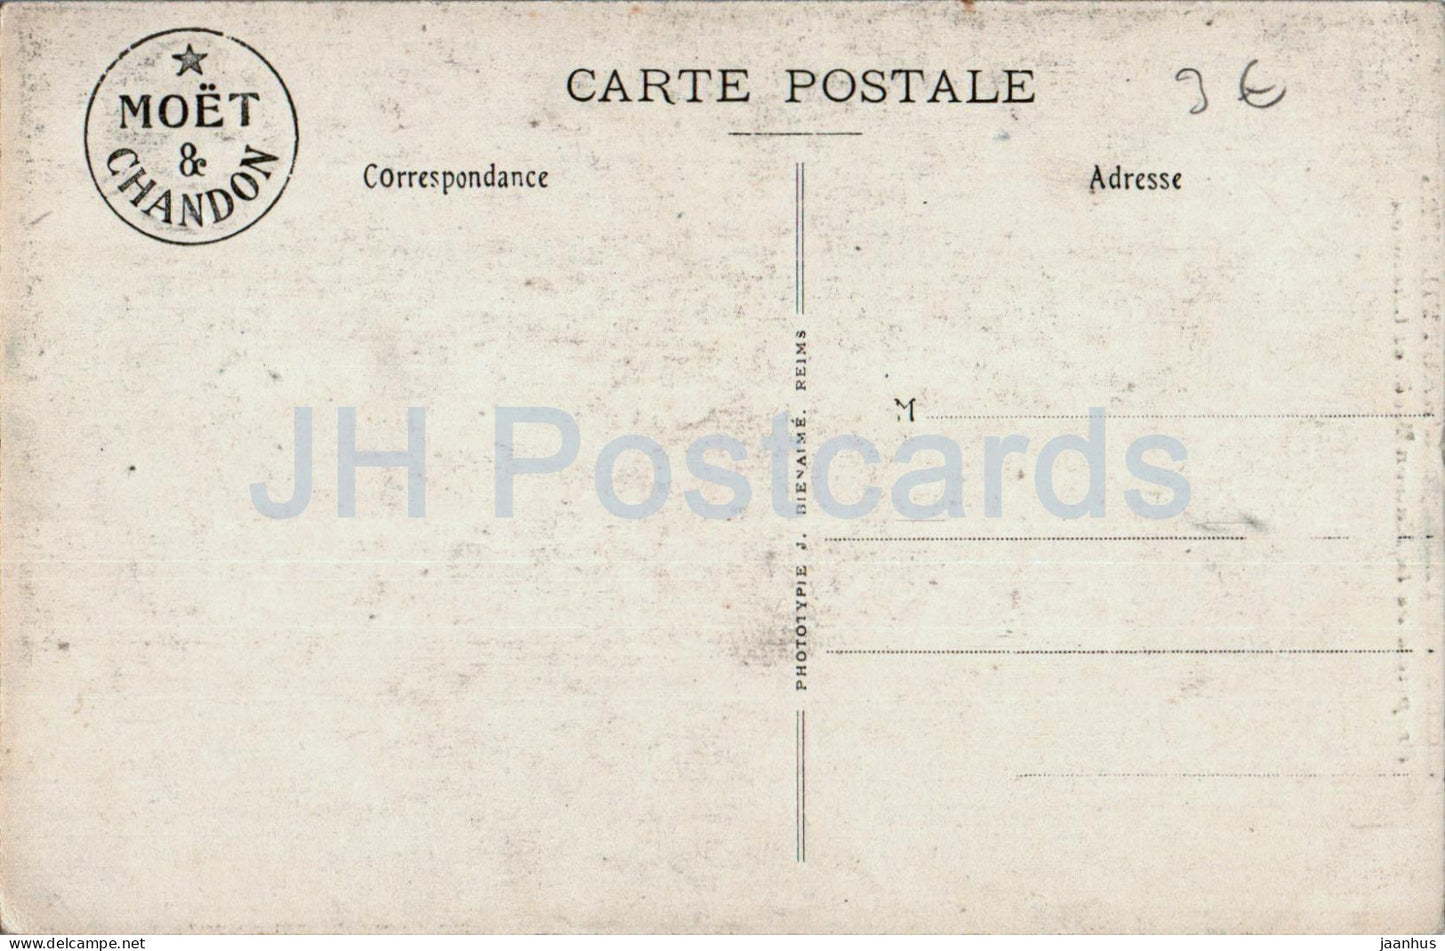 Cloitre de l'Abbaye d'Hautvillers - Propriete de la Maison Moet et Chandon - old postcard - France - unused